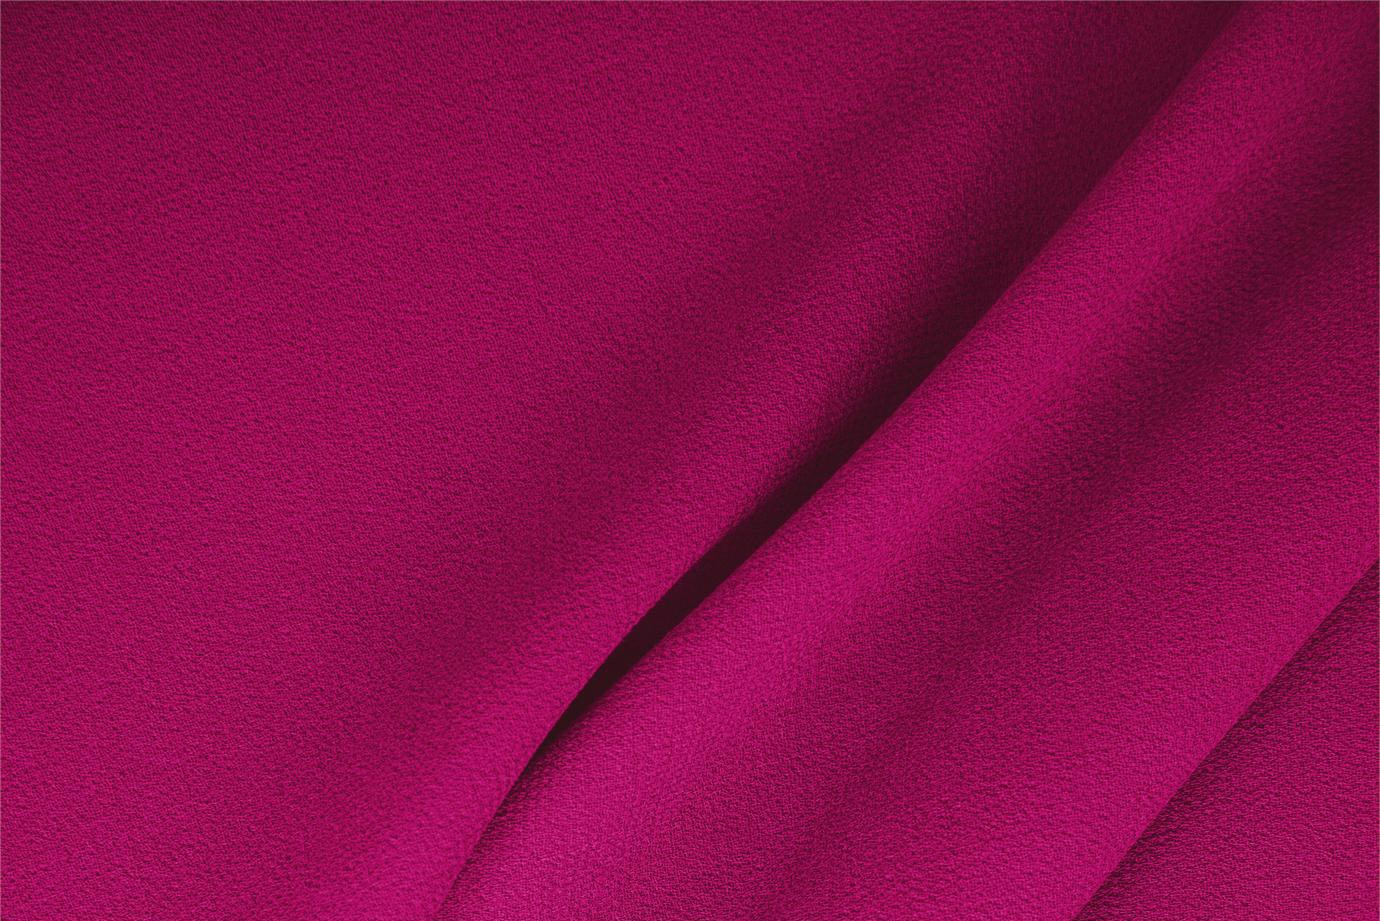 Cyclamen fuchsia stretch wool gabardine fabric for dressmaking